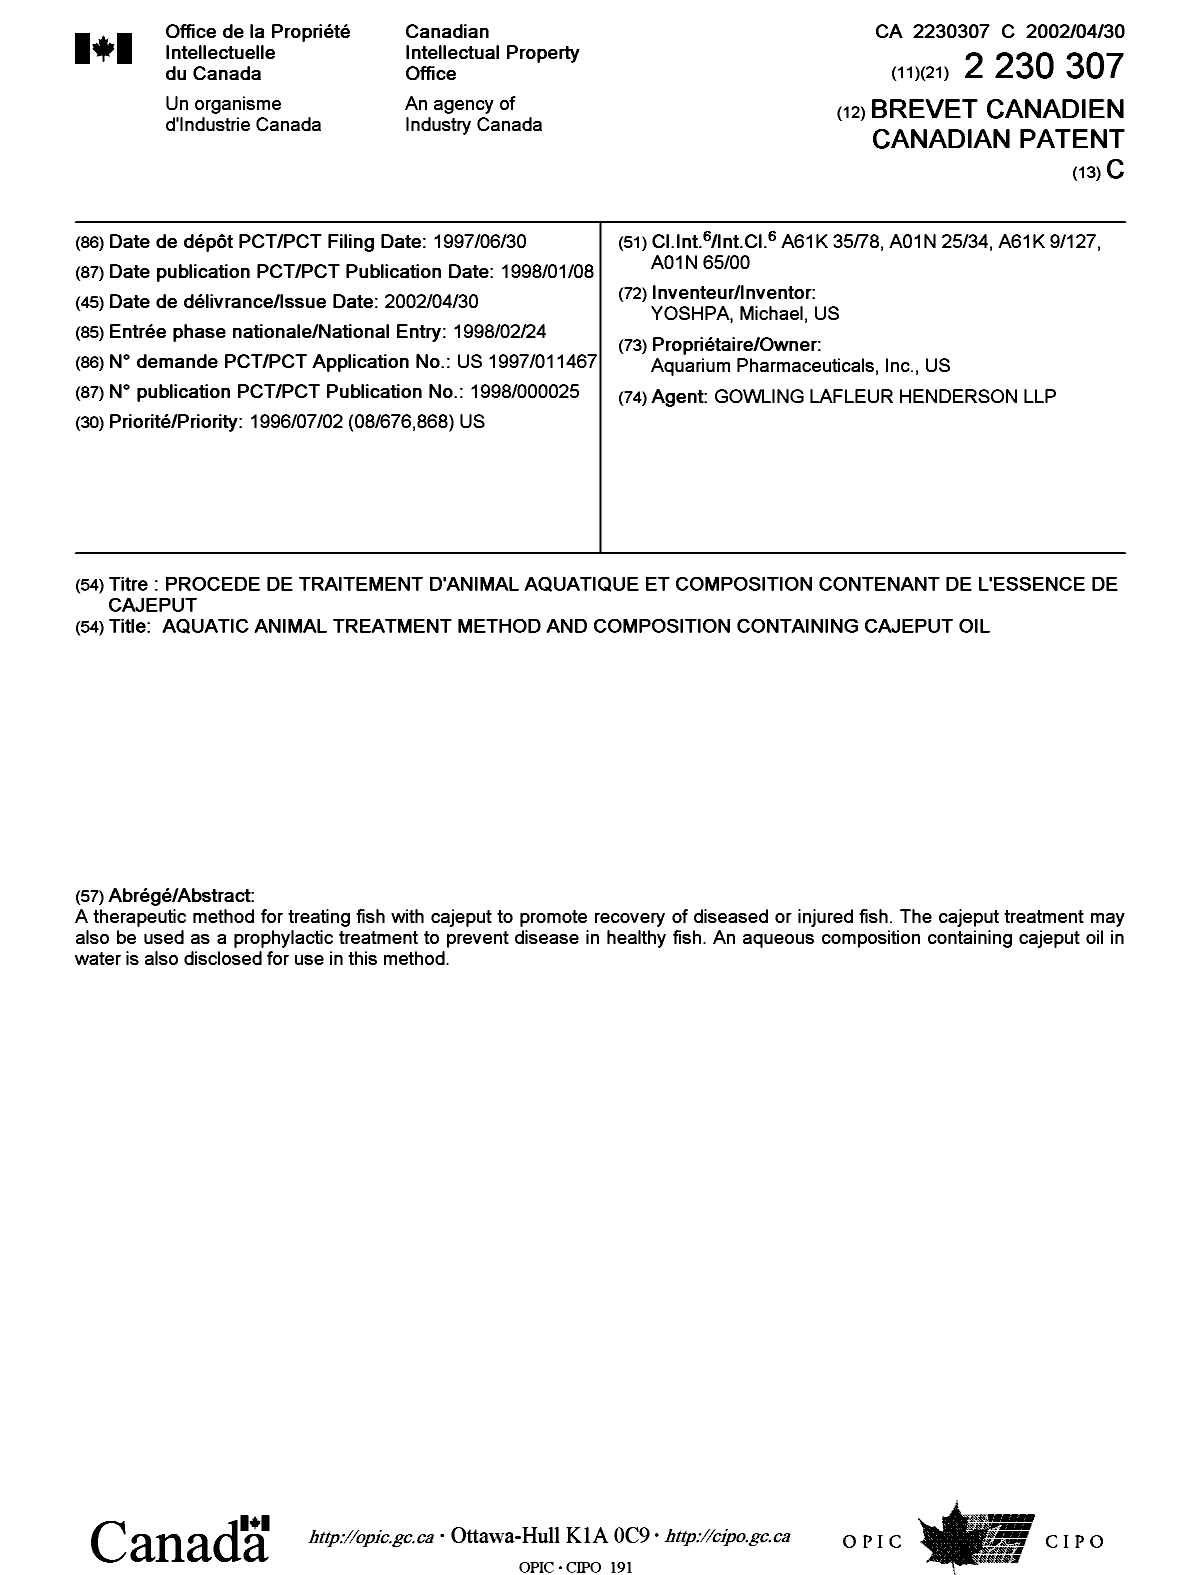 Document de brevet canadien 2230307. Page couverture 20020326. Image 1 de 1